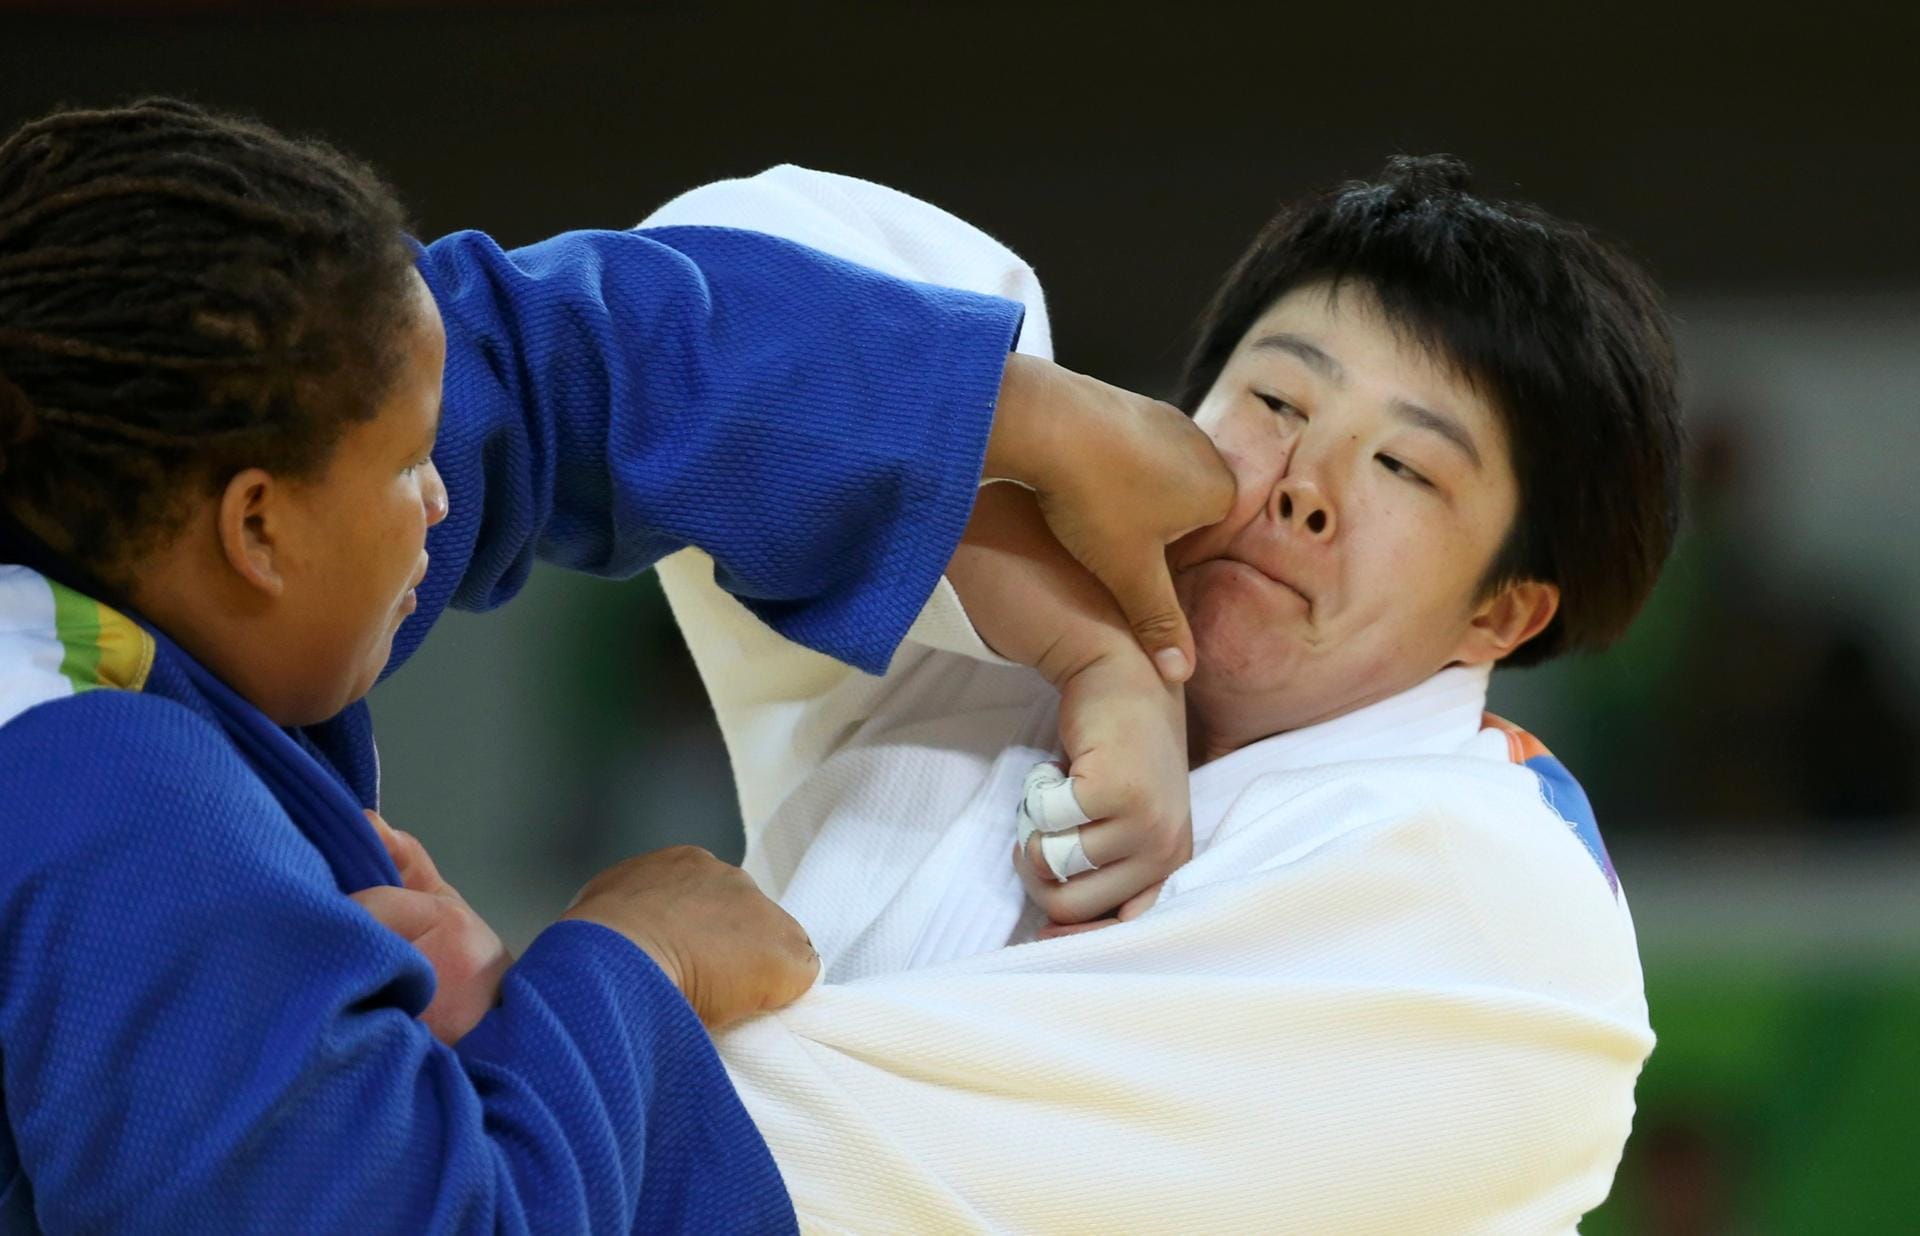 Voll ins Gesicht: Die türkische Judoka Kayra Sayit geht energisch gegen die Gold-Favoritin Yu Song aus China ran. Gebracht hat es nichts - Song ließ sich den Sieg nicht nehmen.